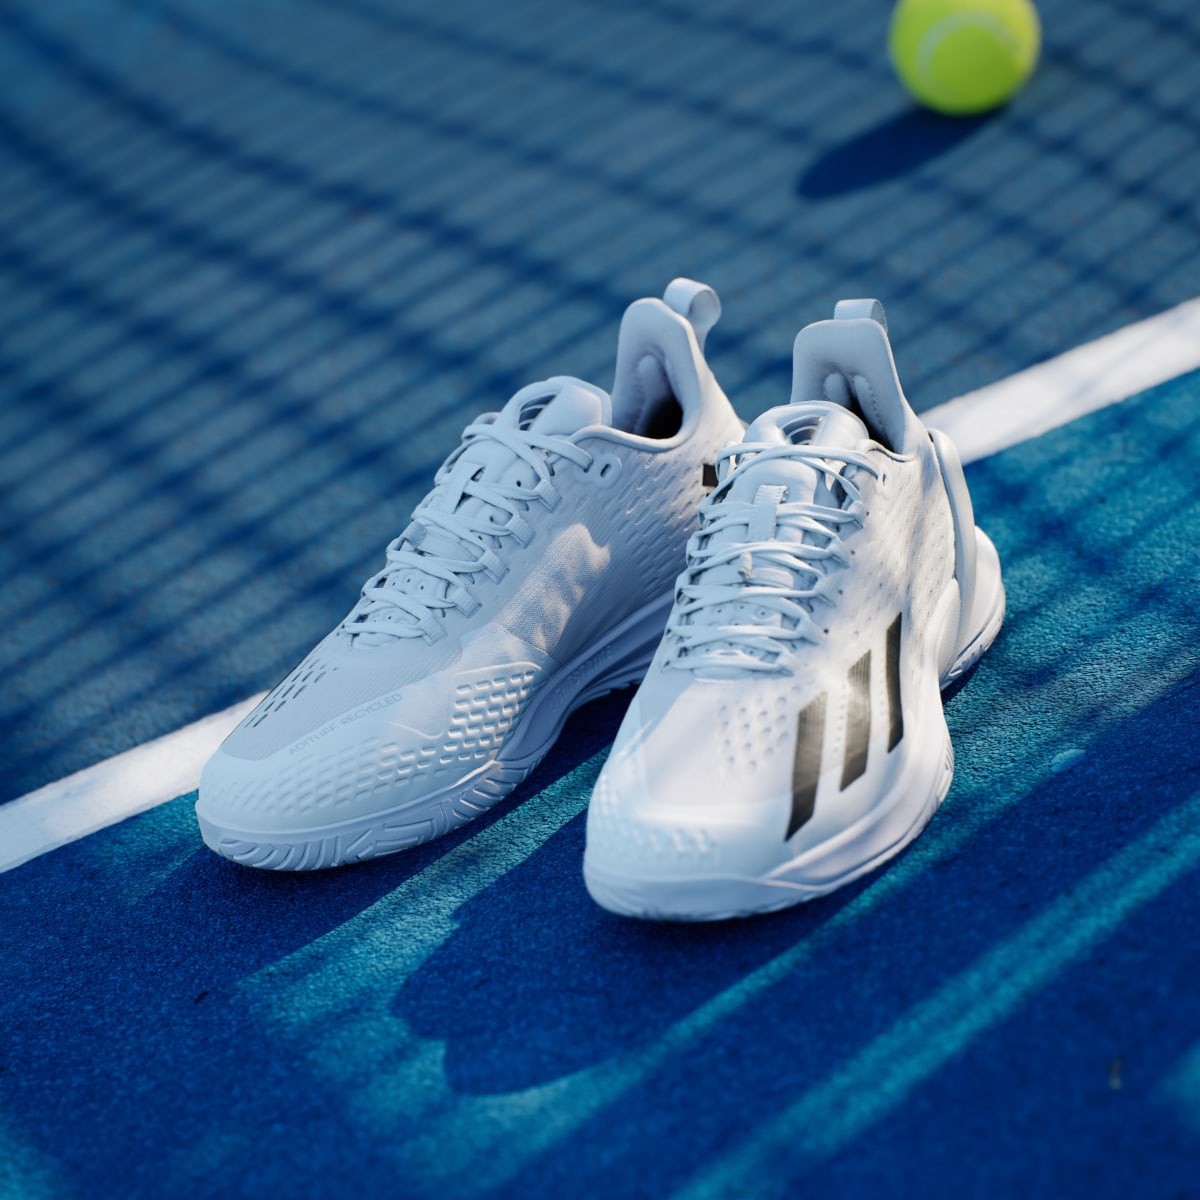 Adidas Adizero Cybersonic Tennis Shoes. 5